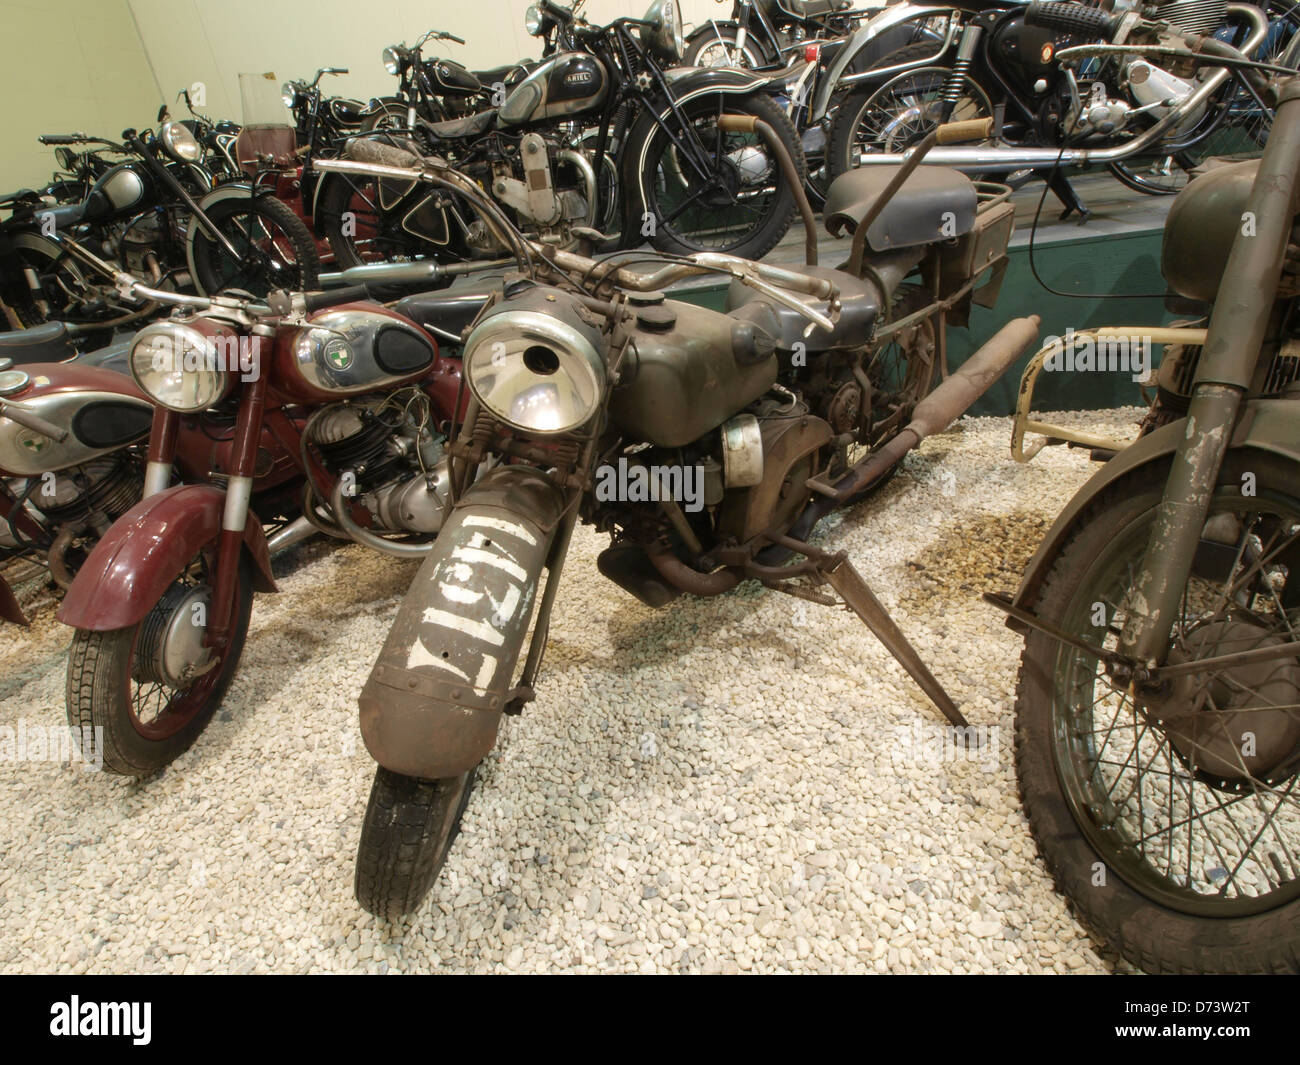 1939 Moto Guzzi Alce Motorcycle pic2. Stock Photo